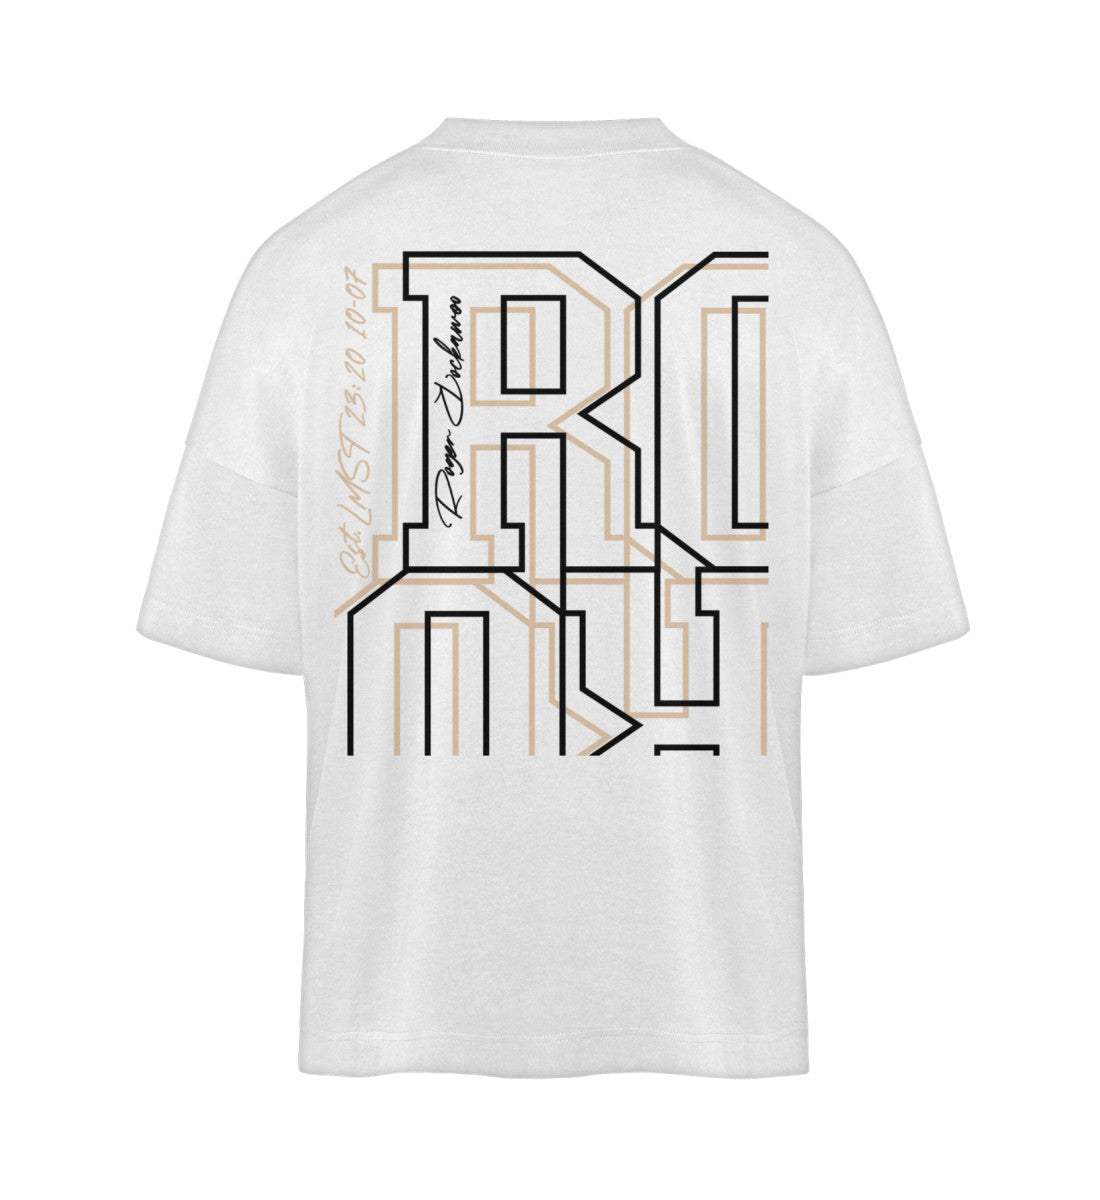 Weißes T-Shirt Unisex Oversize Fit für Frauen und Männer bedruckt mit dem Design der Roger Rockawoo Kollektion Schwer Laut